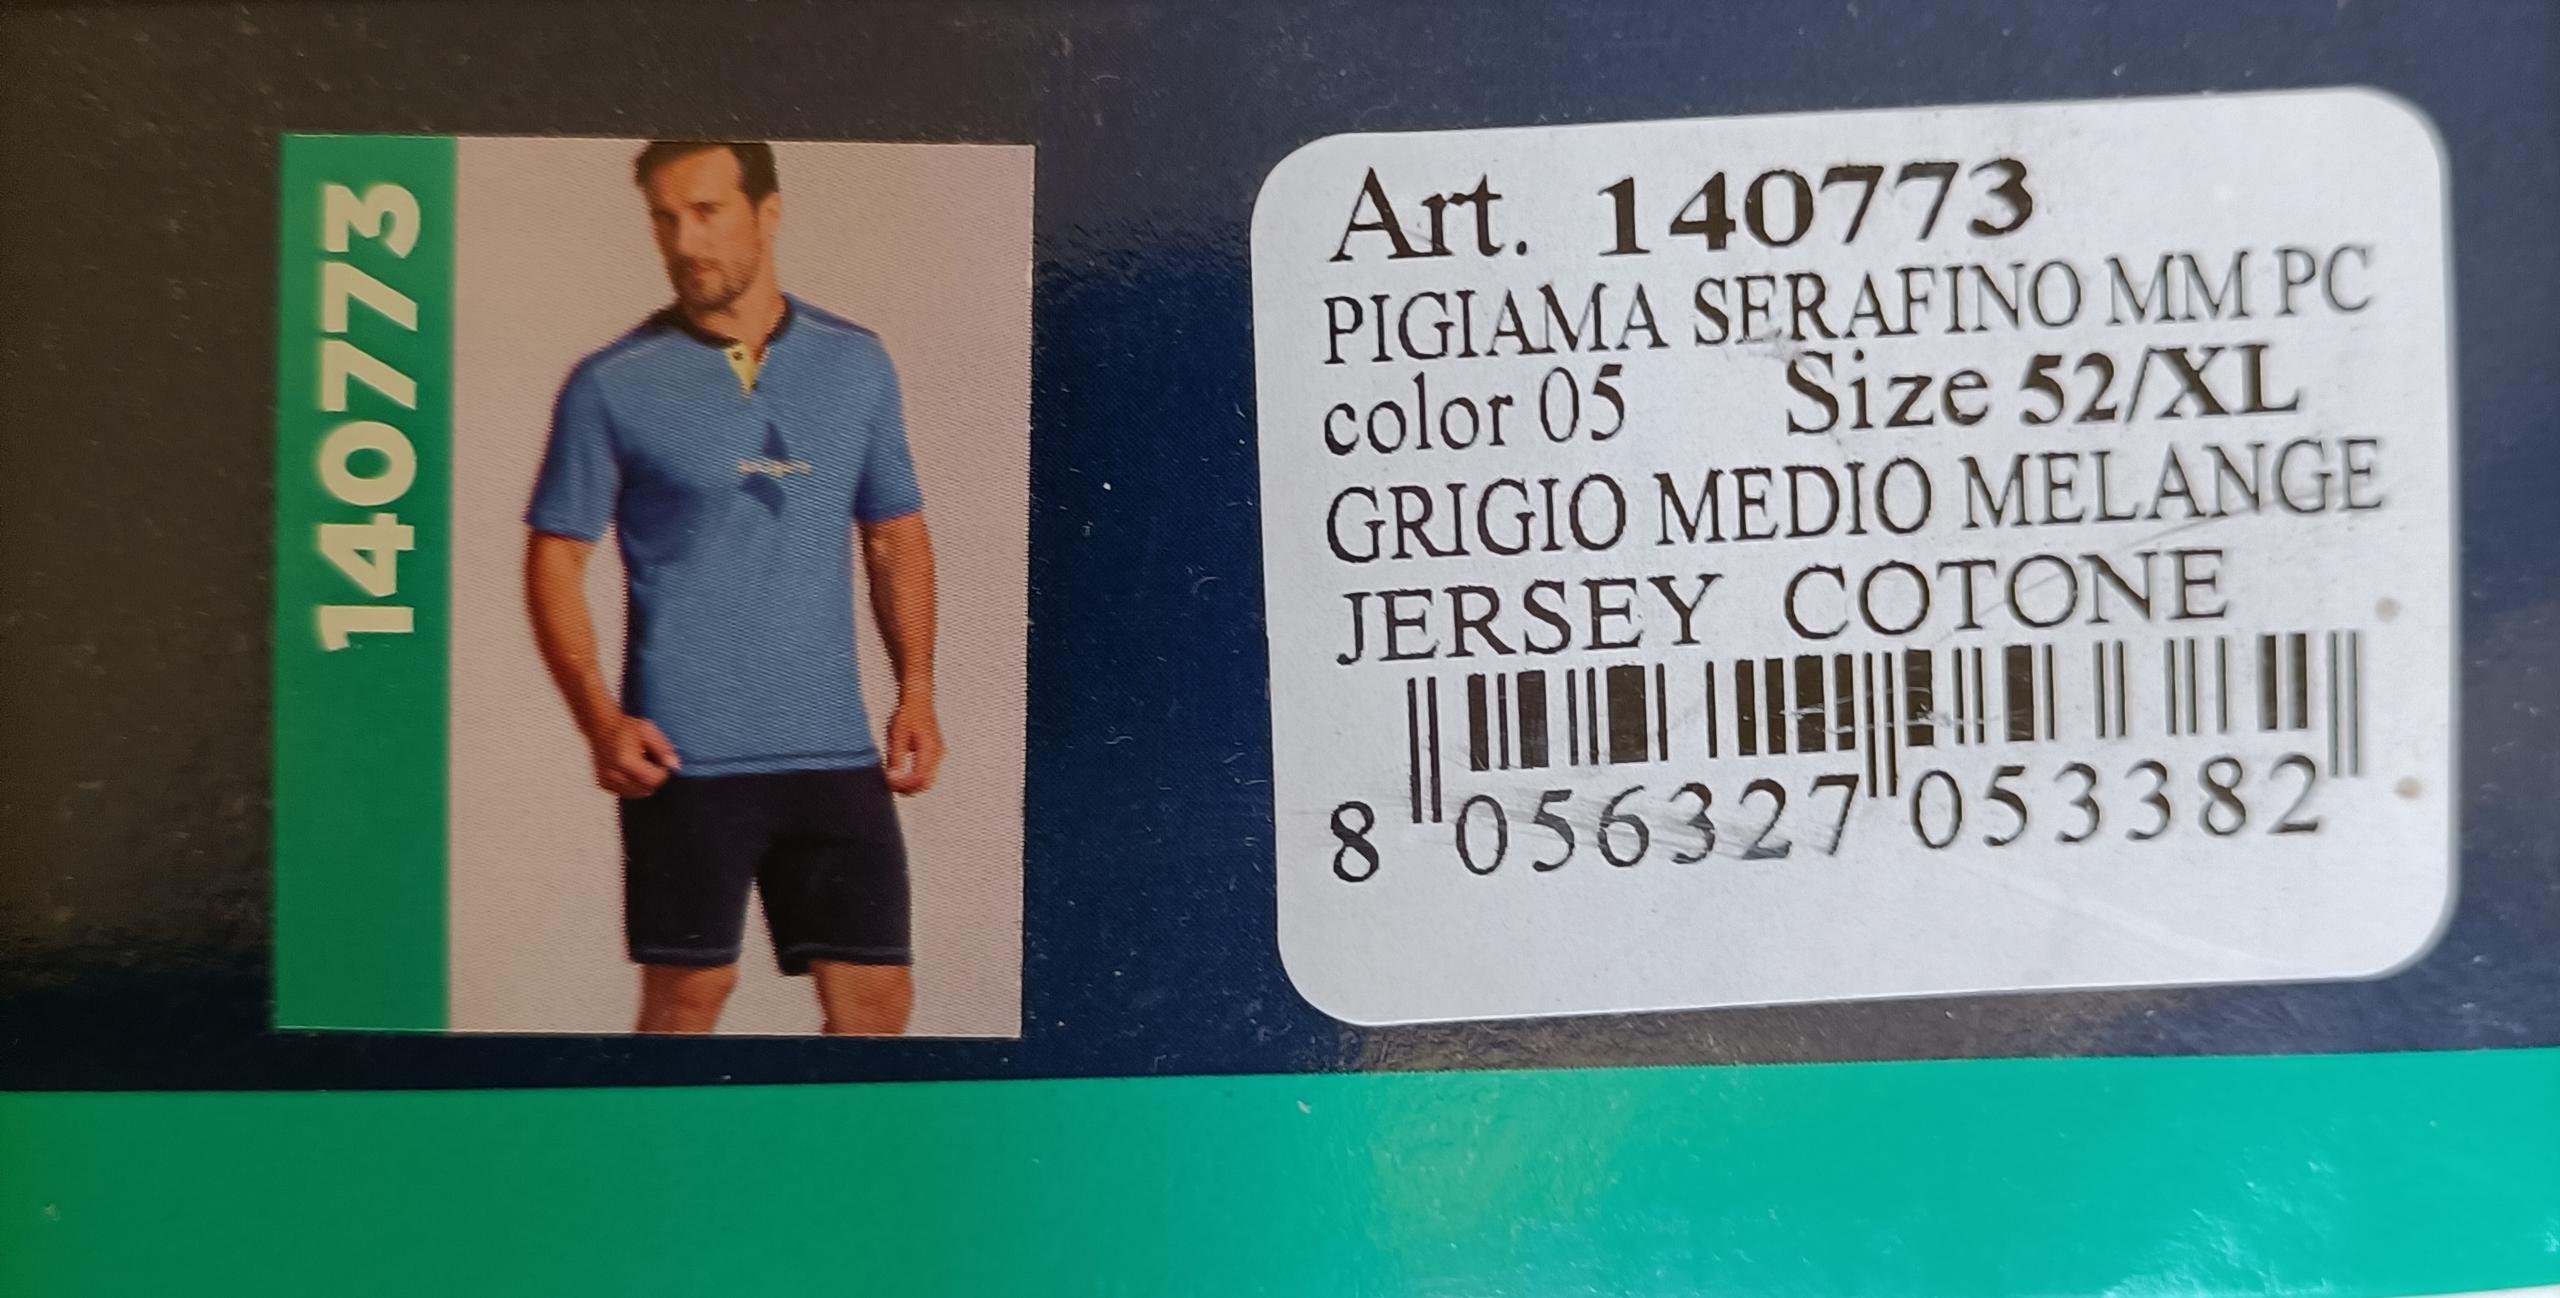 PIGIAMA in jersey cotone NAVIGARE modello 140773 taglia 52 XL GRIGIO MELANGE